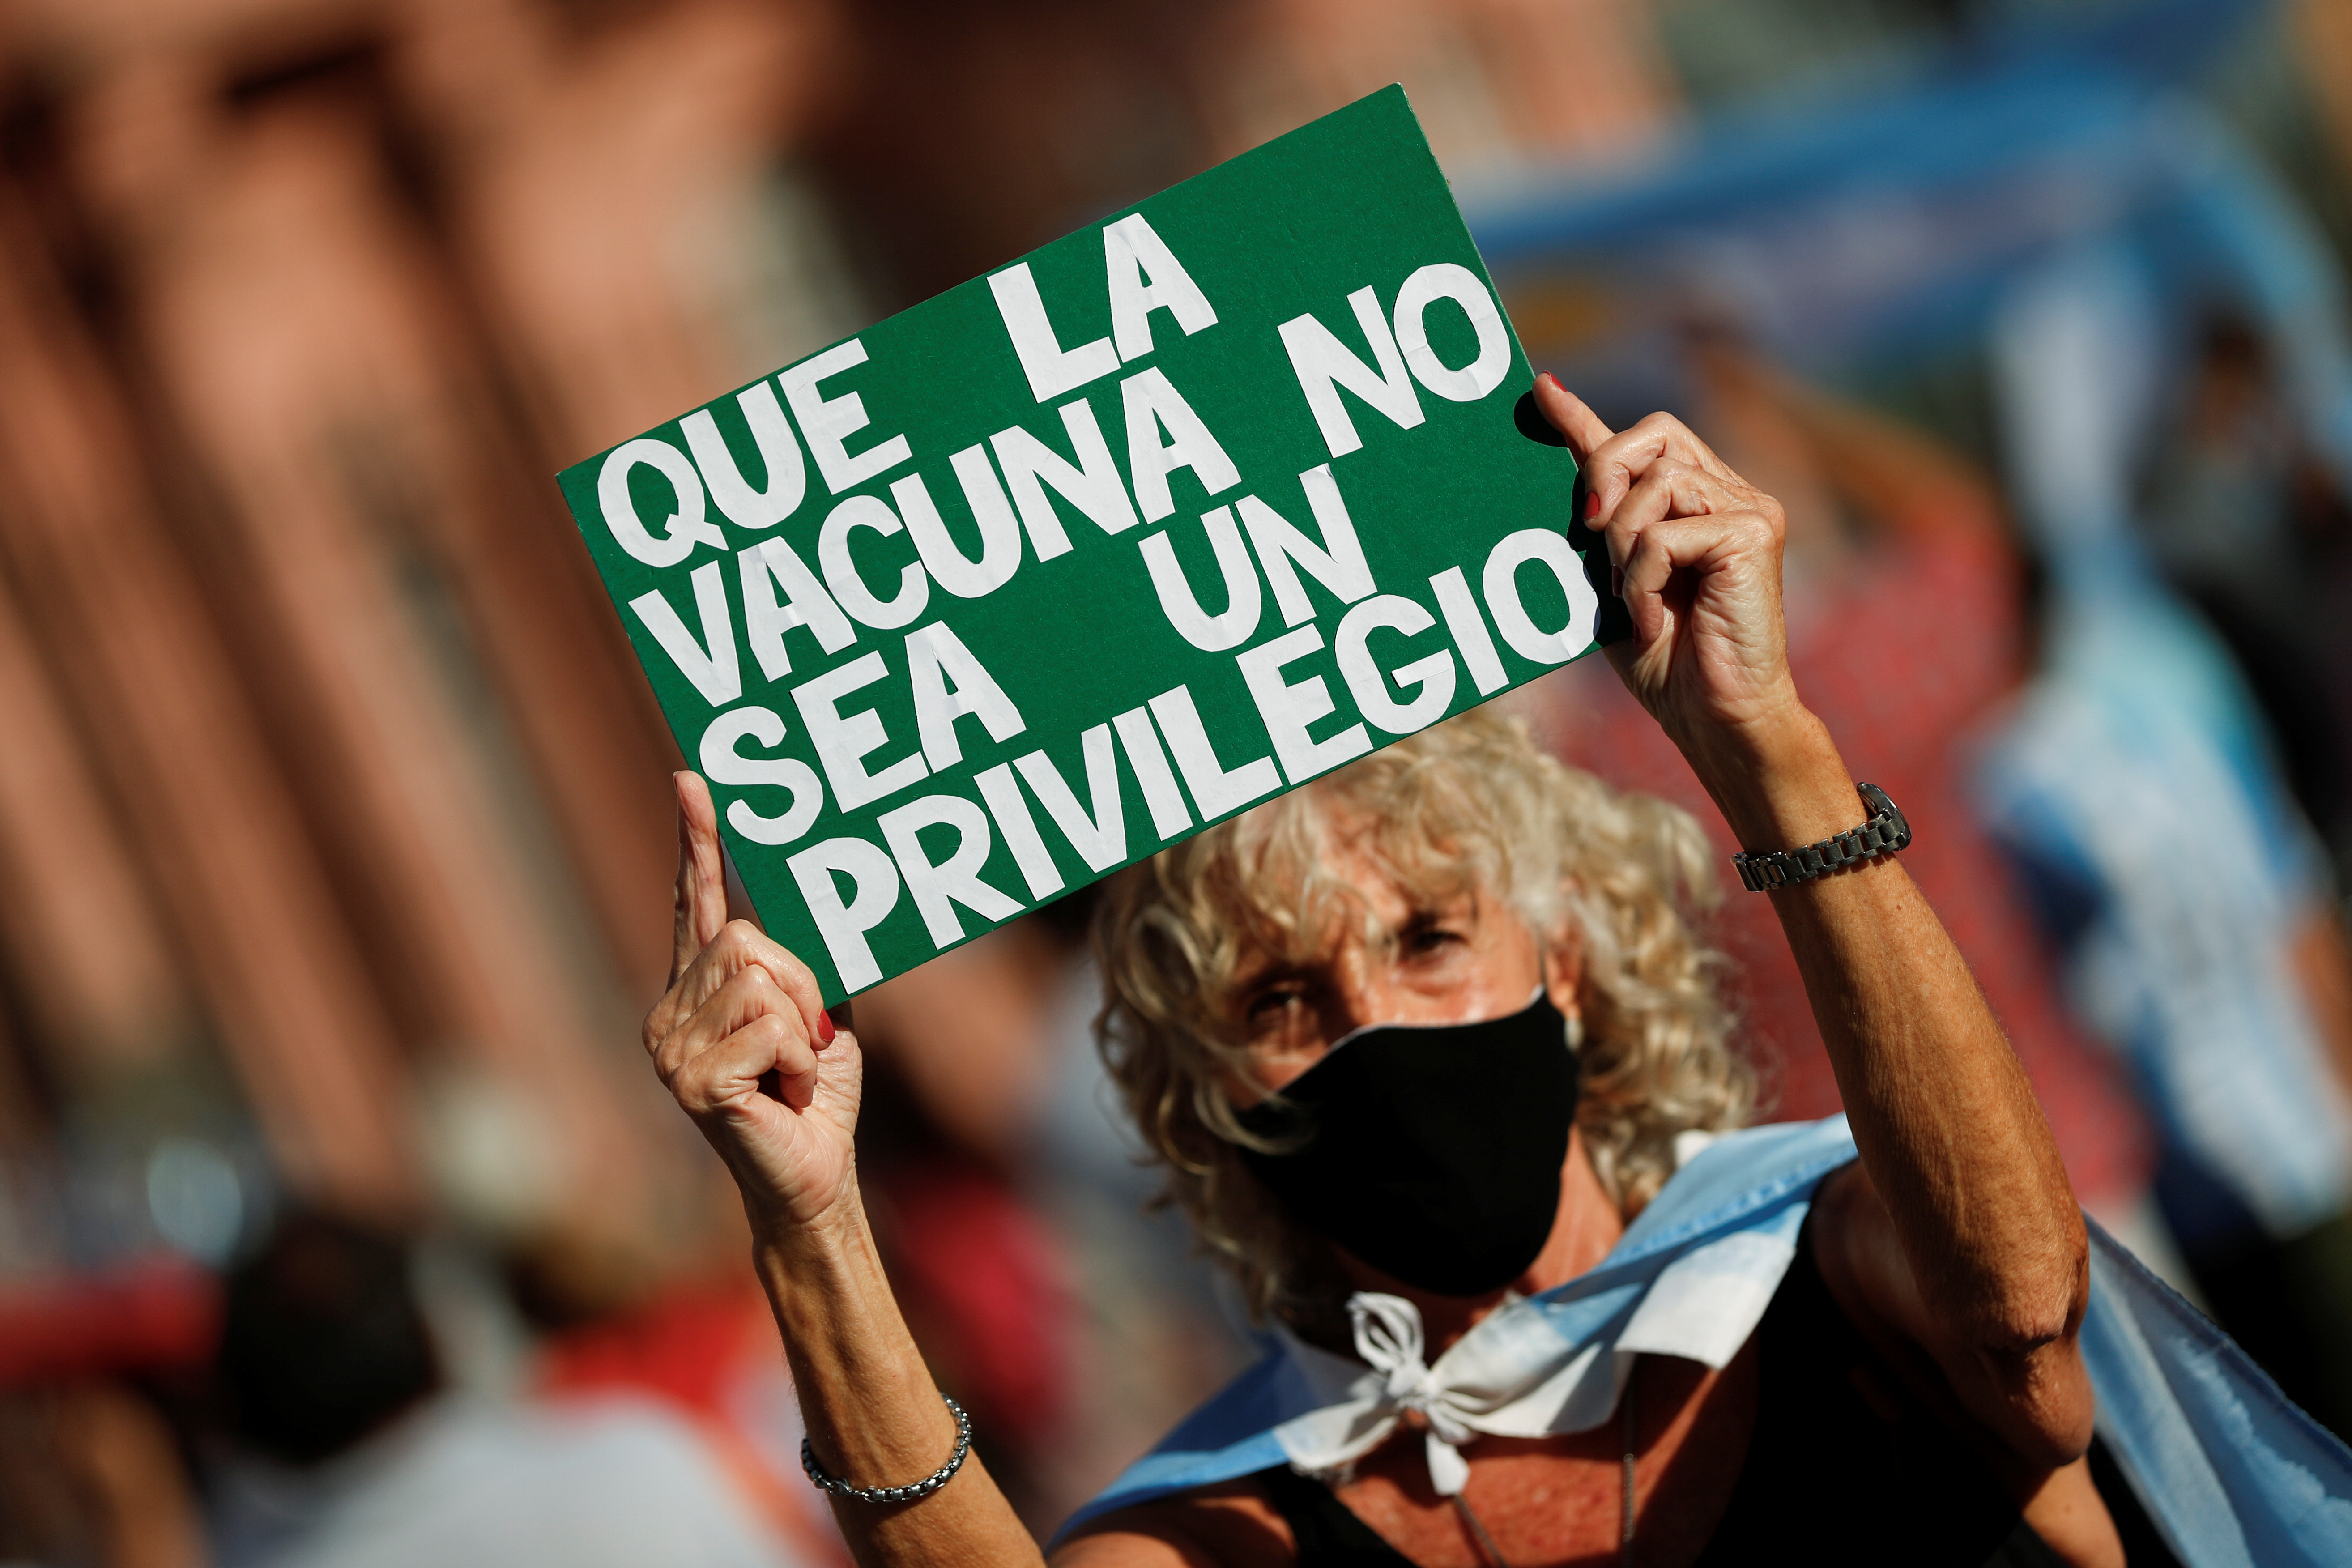 “Devuélvanme mi vacuna”. Argentinos protestan por escándalo de privilegios en vacunación Covid-19